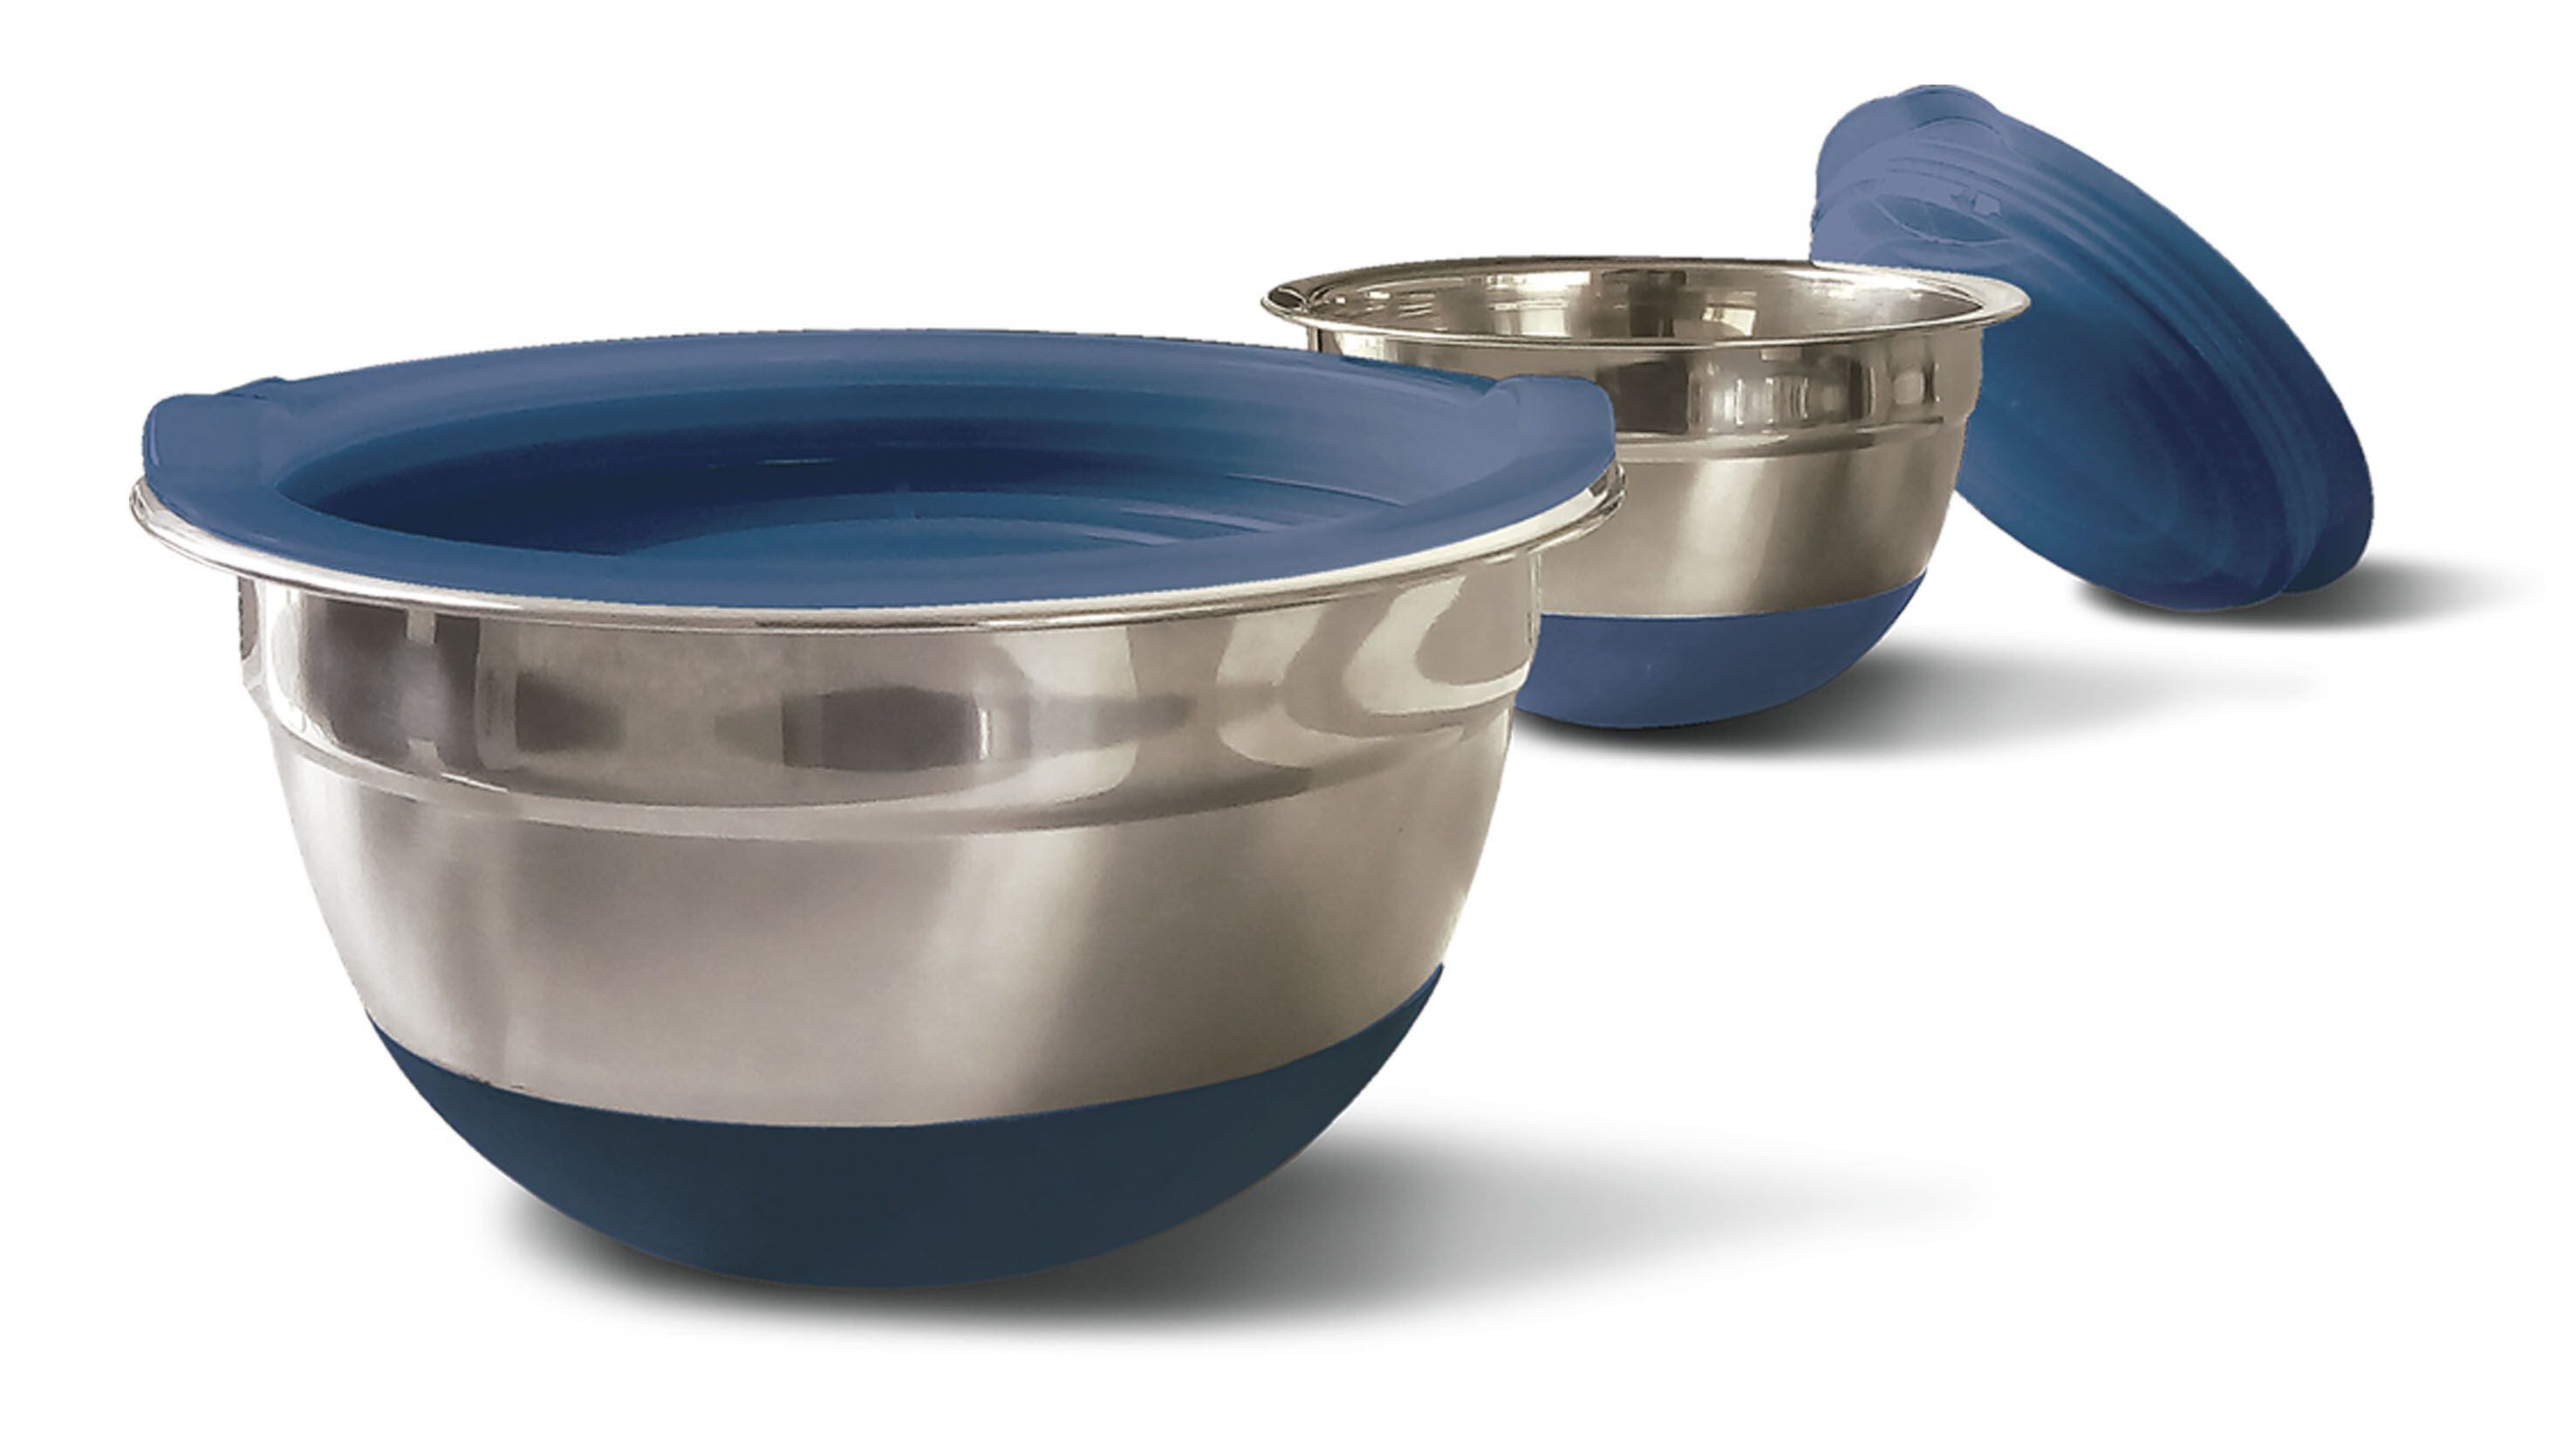 Bowls de acero inoxidable, son de 24 cm y 16 cm con base de silicona antideslizante.